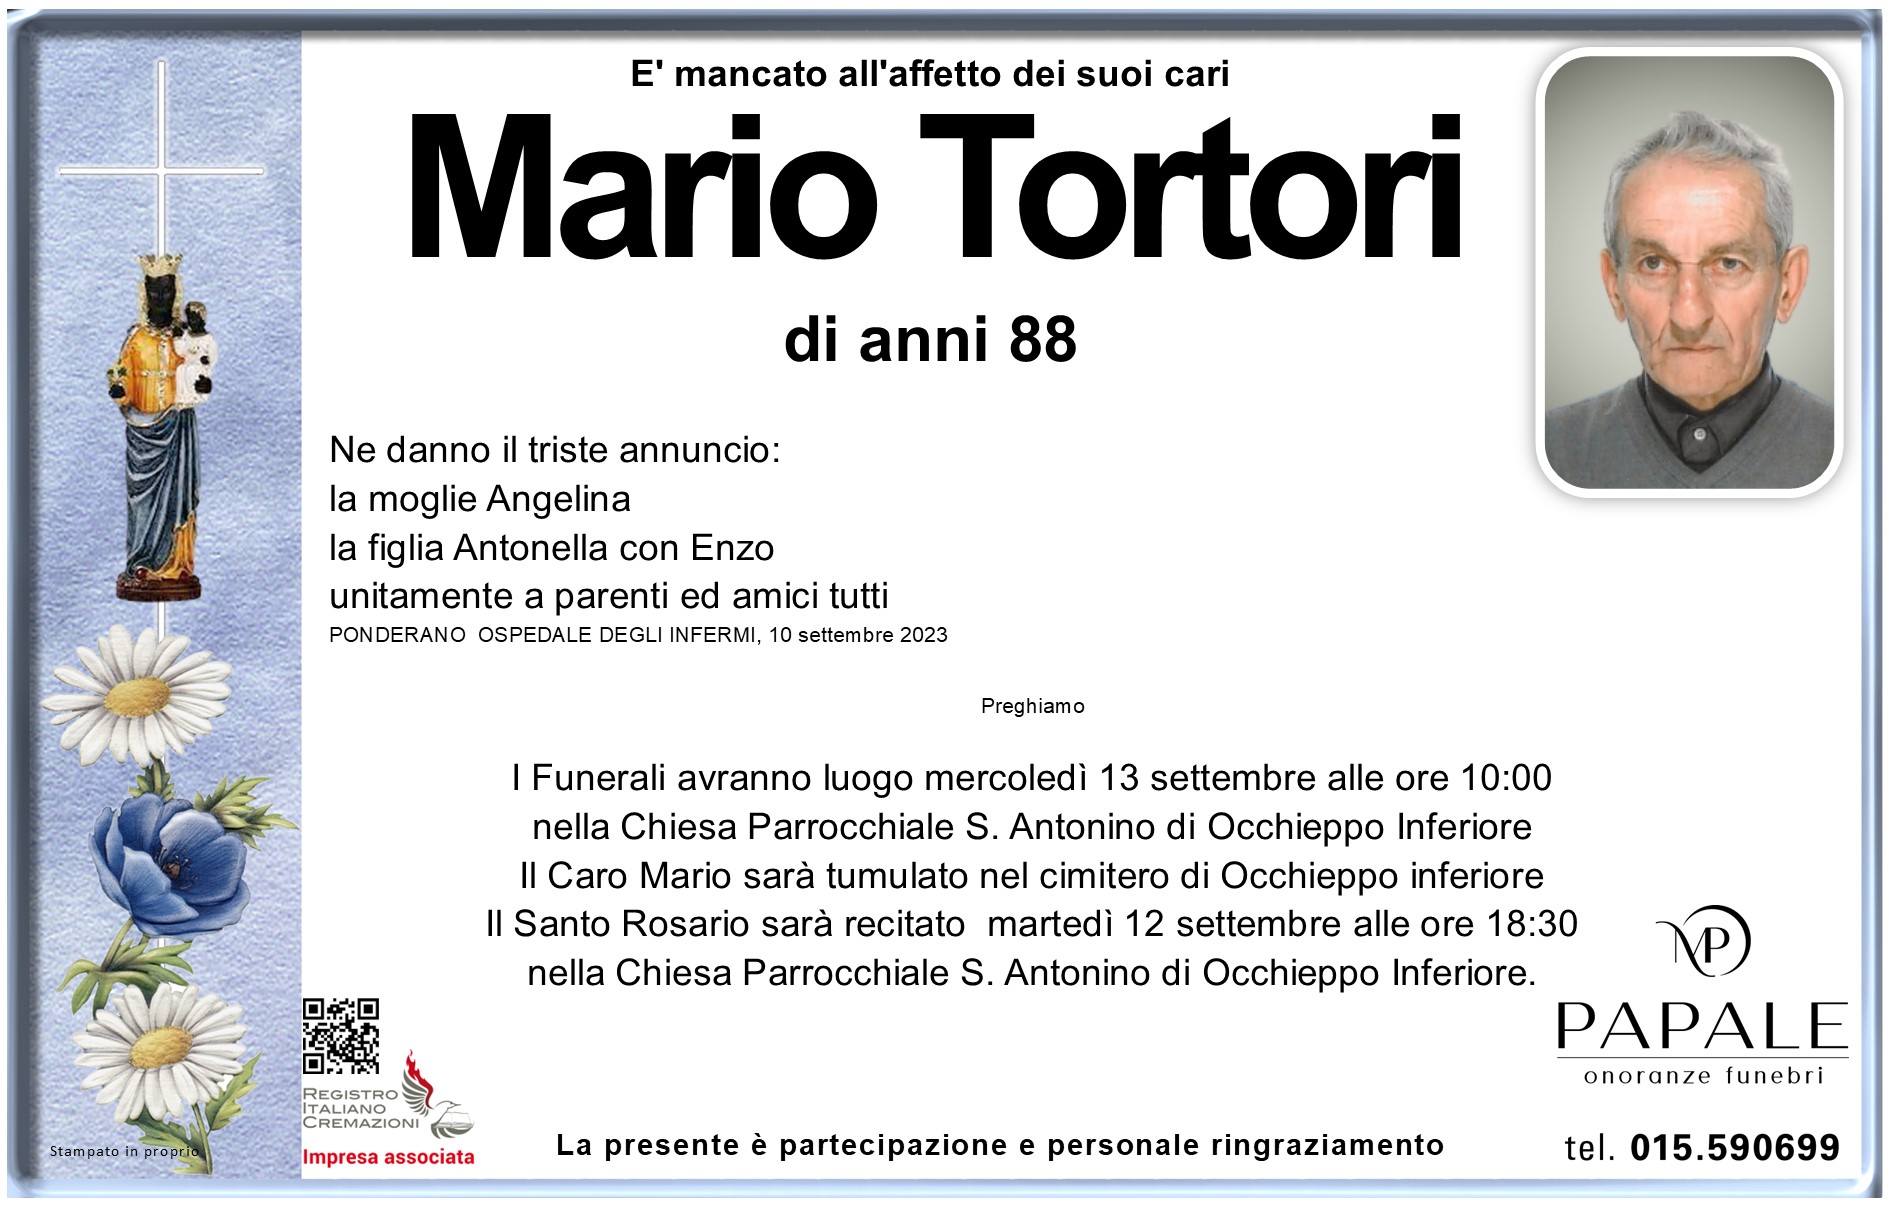 Onoranze Funebri Papale - Necrologi - Necrologio di Mario Tortori